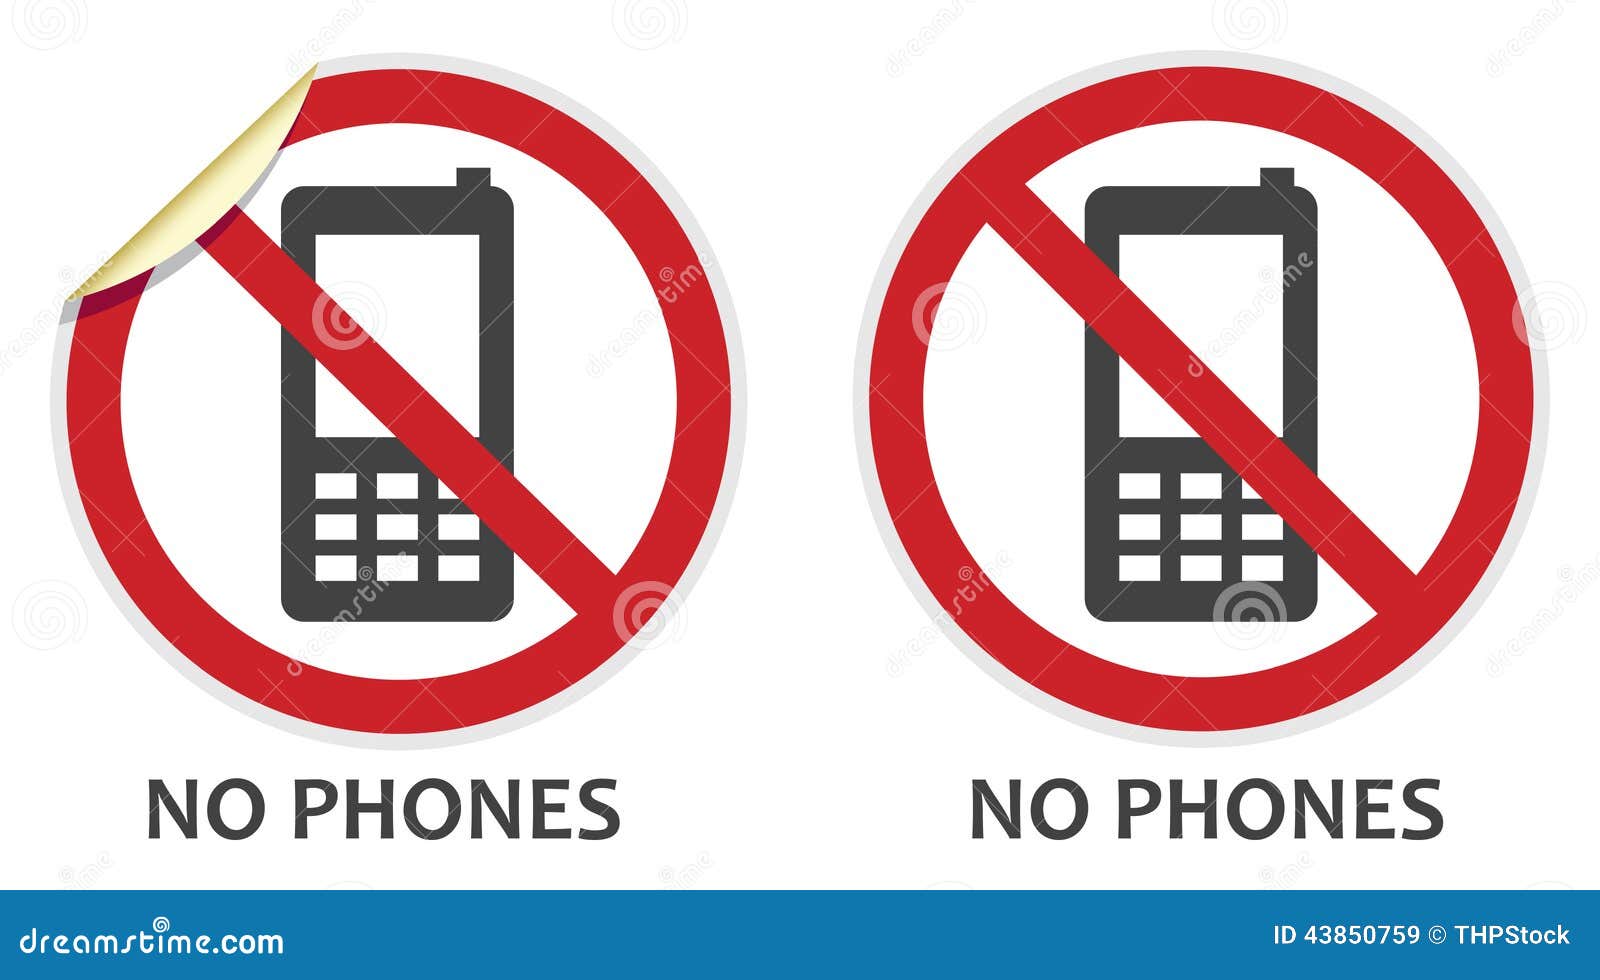 no phones sign